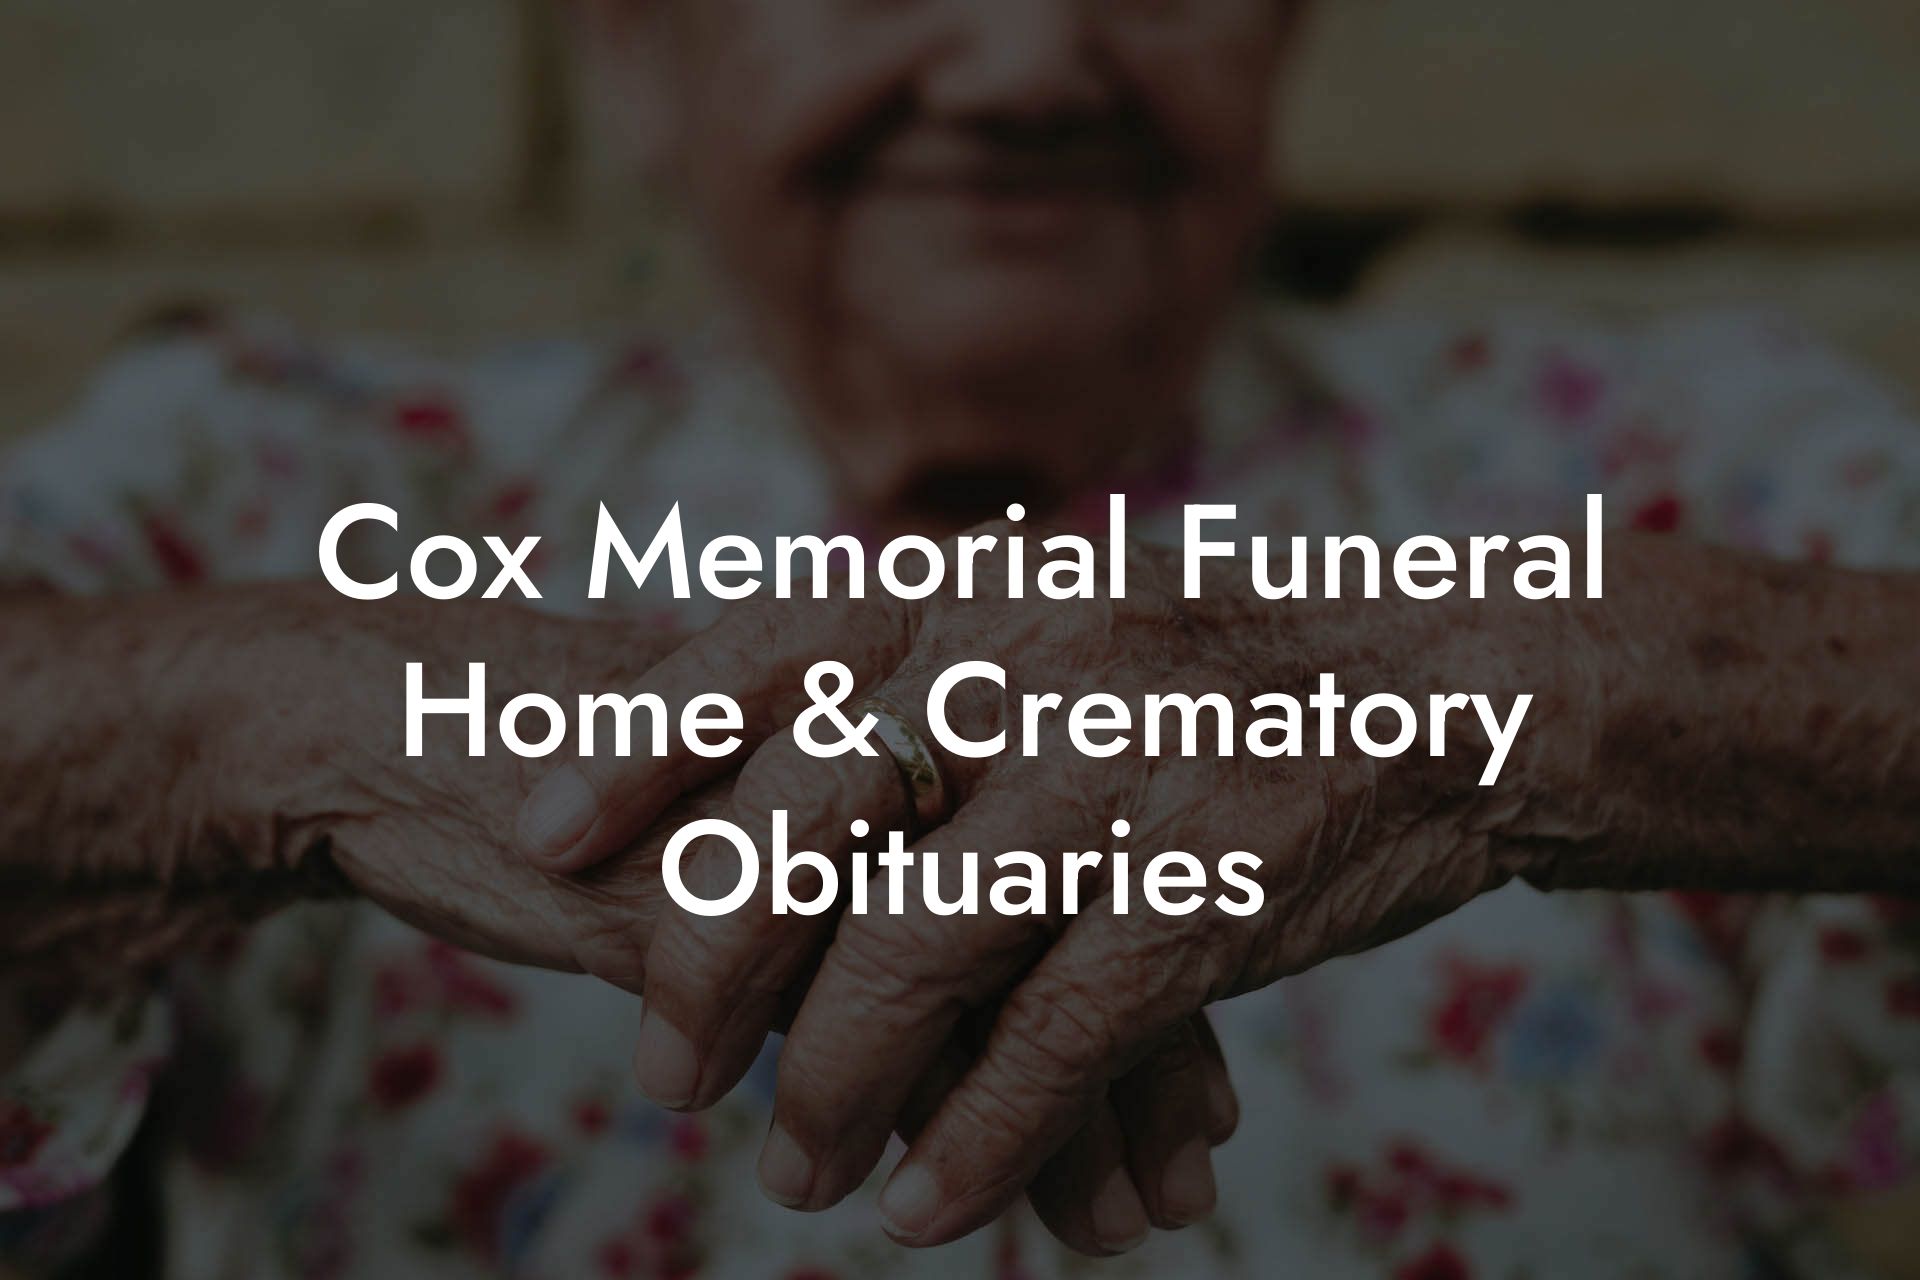 Cox Memorial Funeral Home & Crematory Obituaries